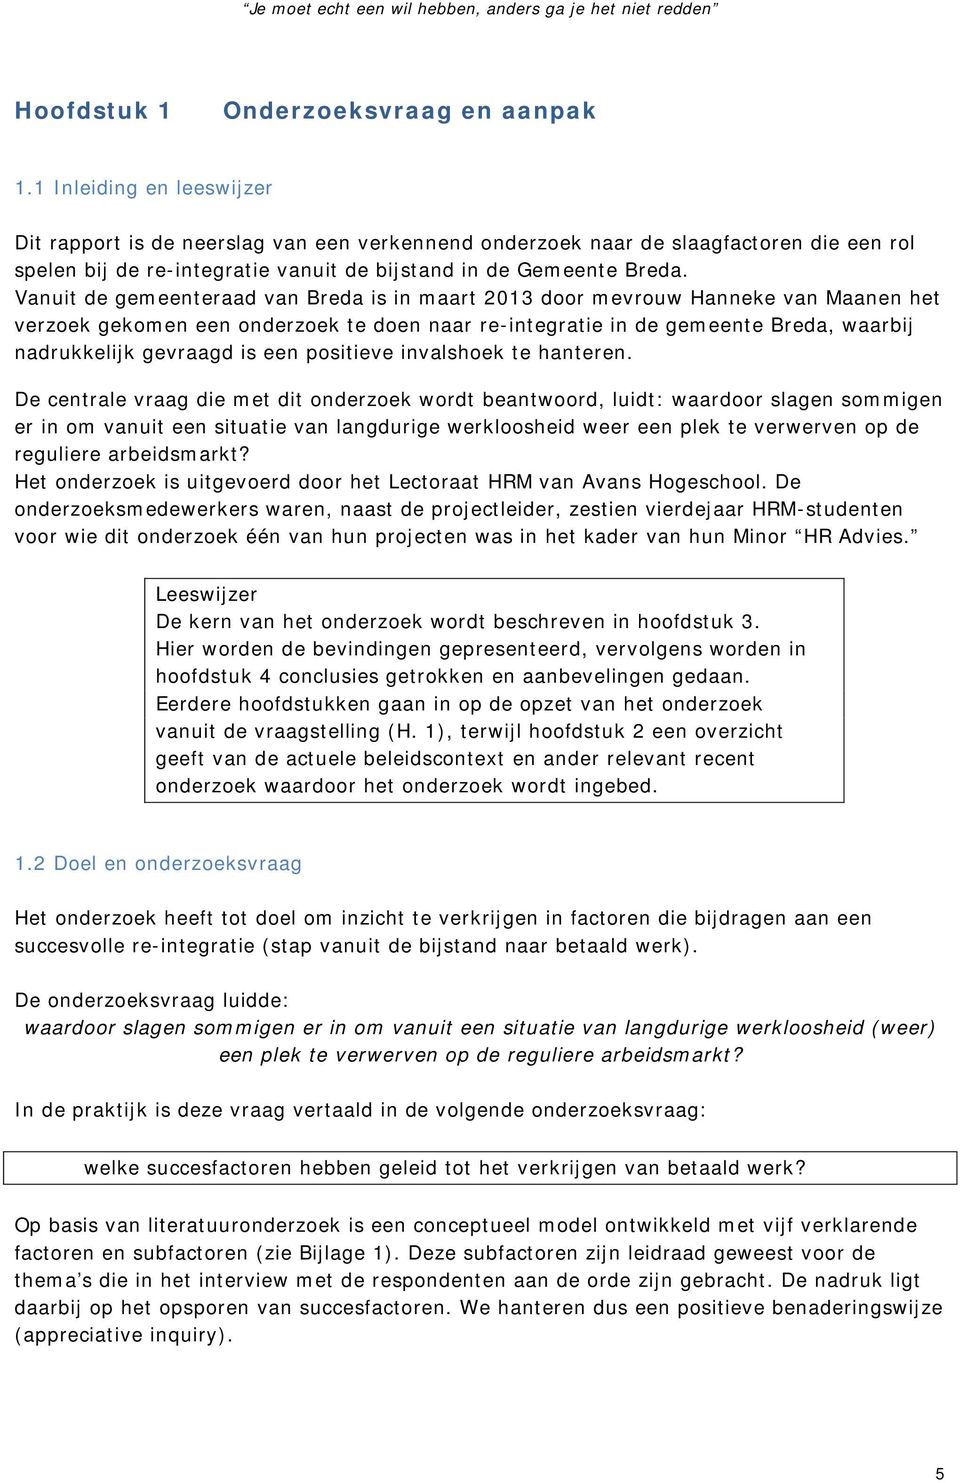 Vanuit de gemeenteraad van Breda is in maart 2013 door mevrouw Hanneke van Maanen het verzoek gekomen een onderzoek te doen naar re-integratie in de gemeente Breda, waarbij nadrukkelijk gevraagd is